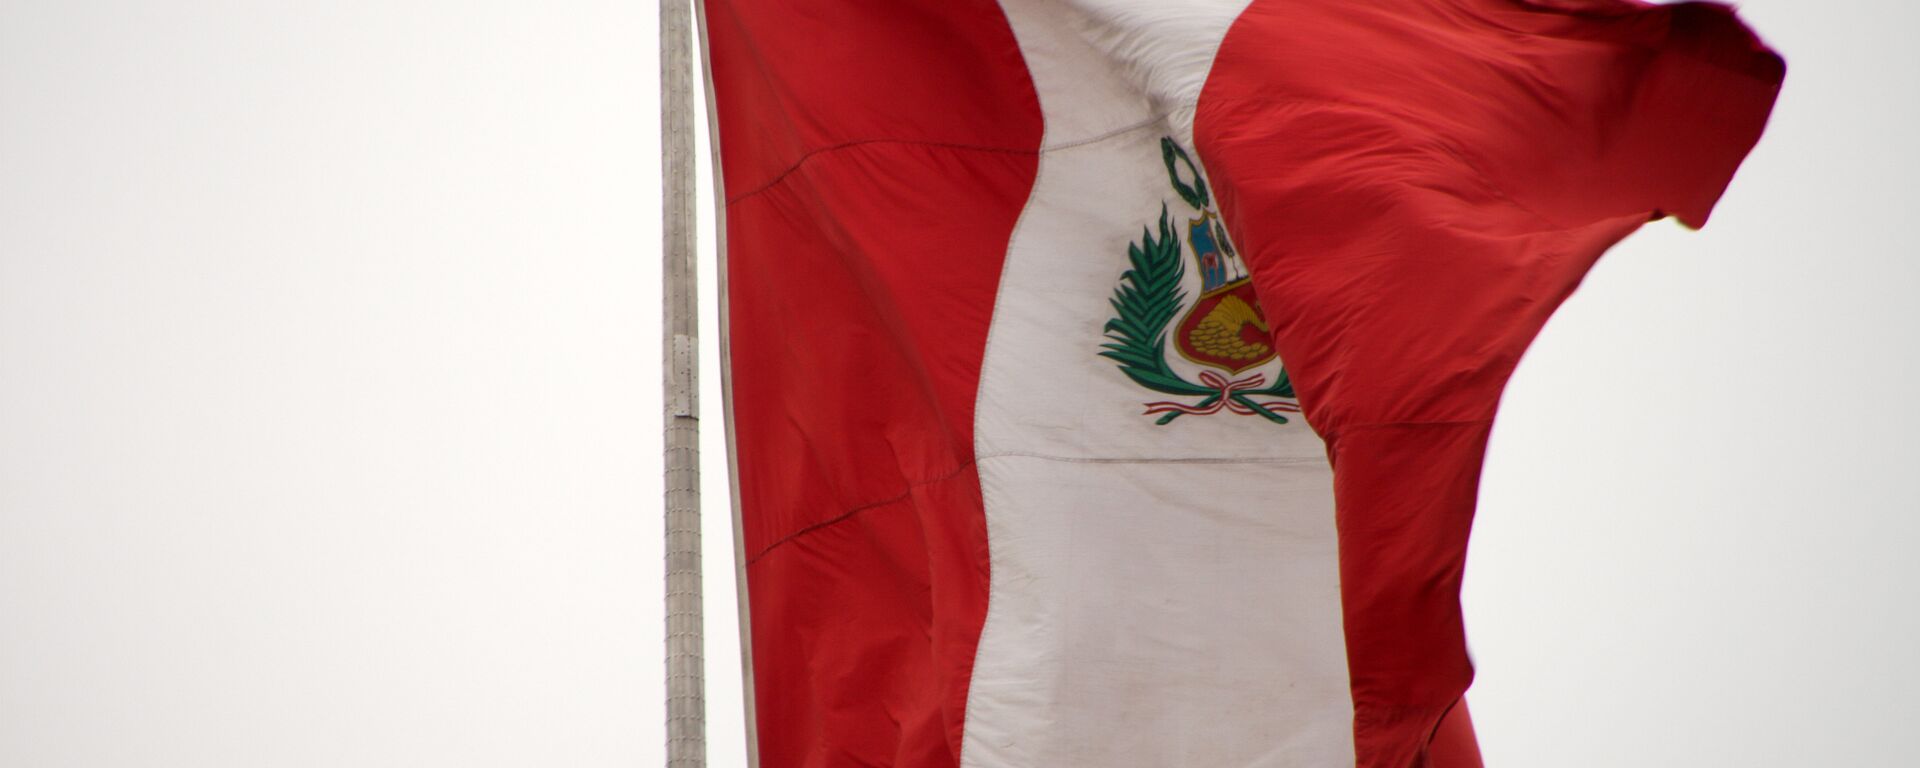 La bandera de Perú - Sputnik Mundo, 1920, 28.09.2022